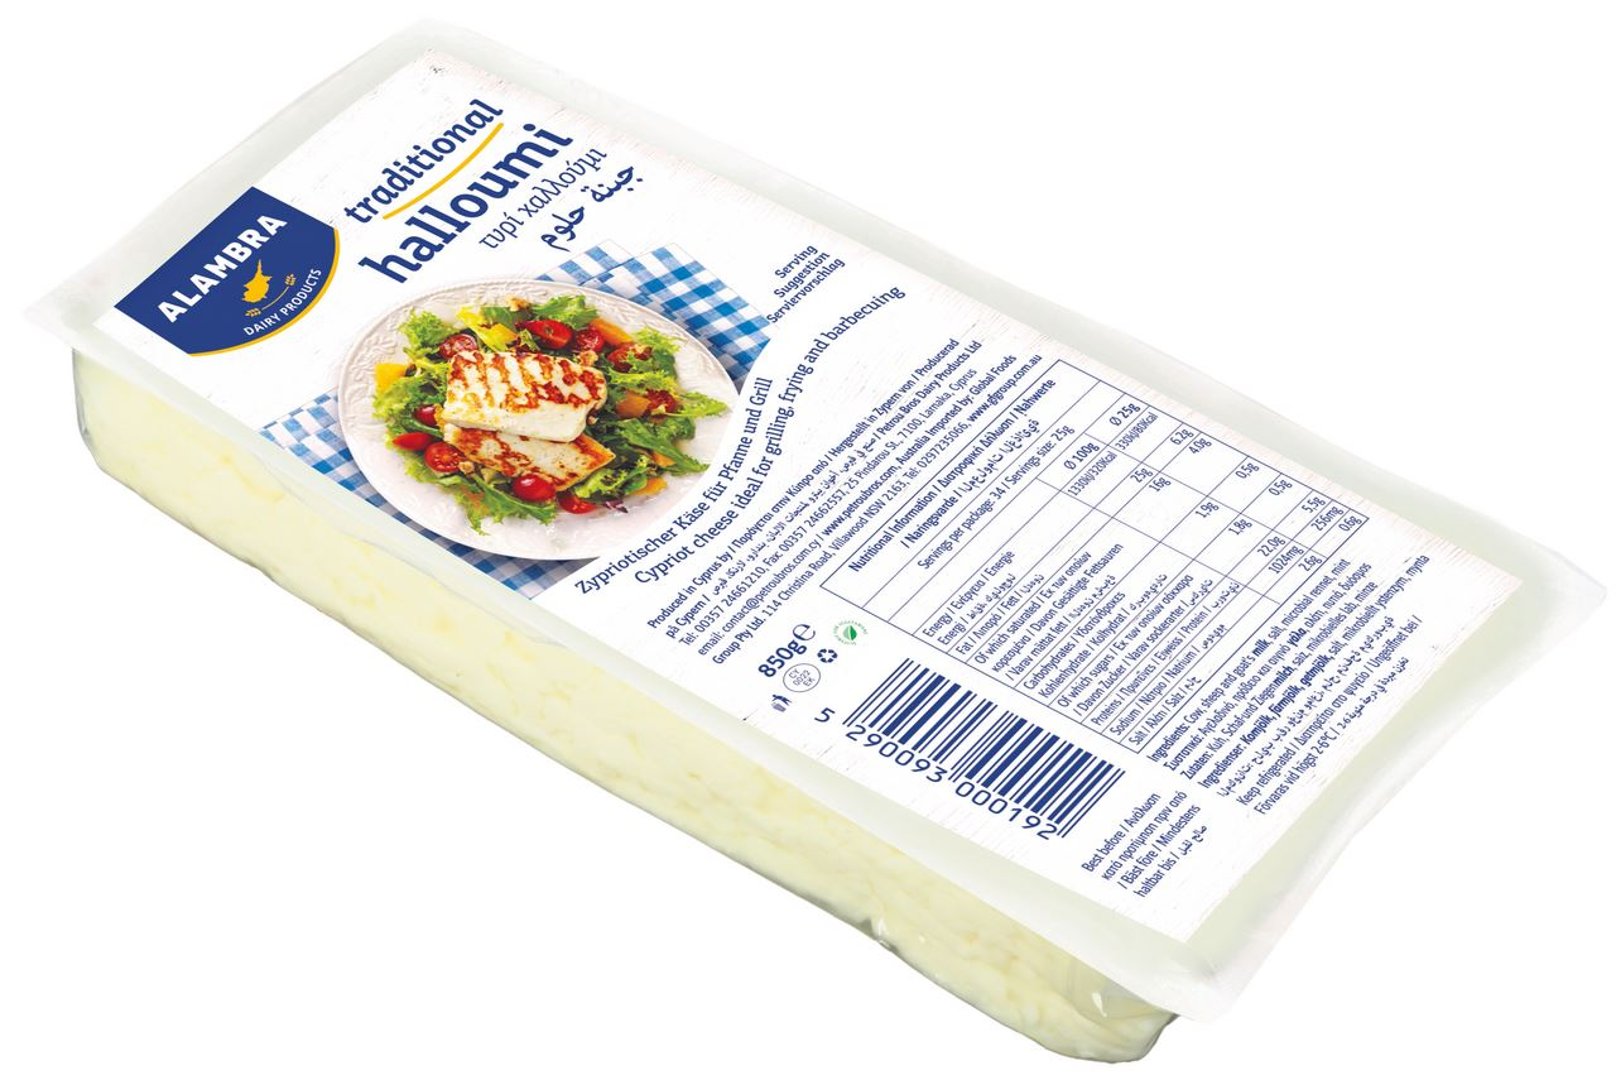 ALAMBRA - Halloumi Grillkäse 43% Fett i.Tr. gekühlt - 850 g Packung